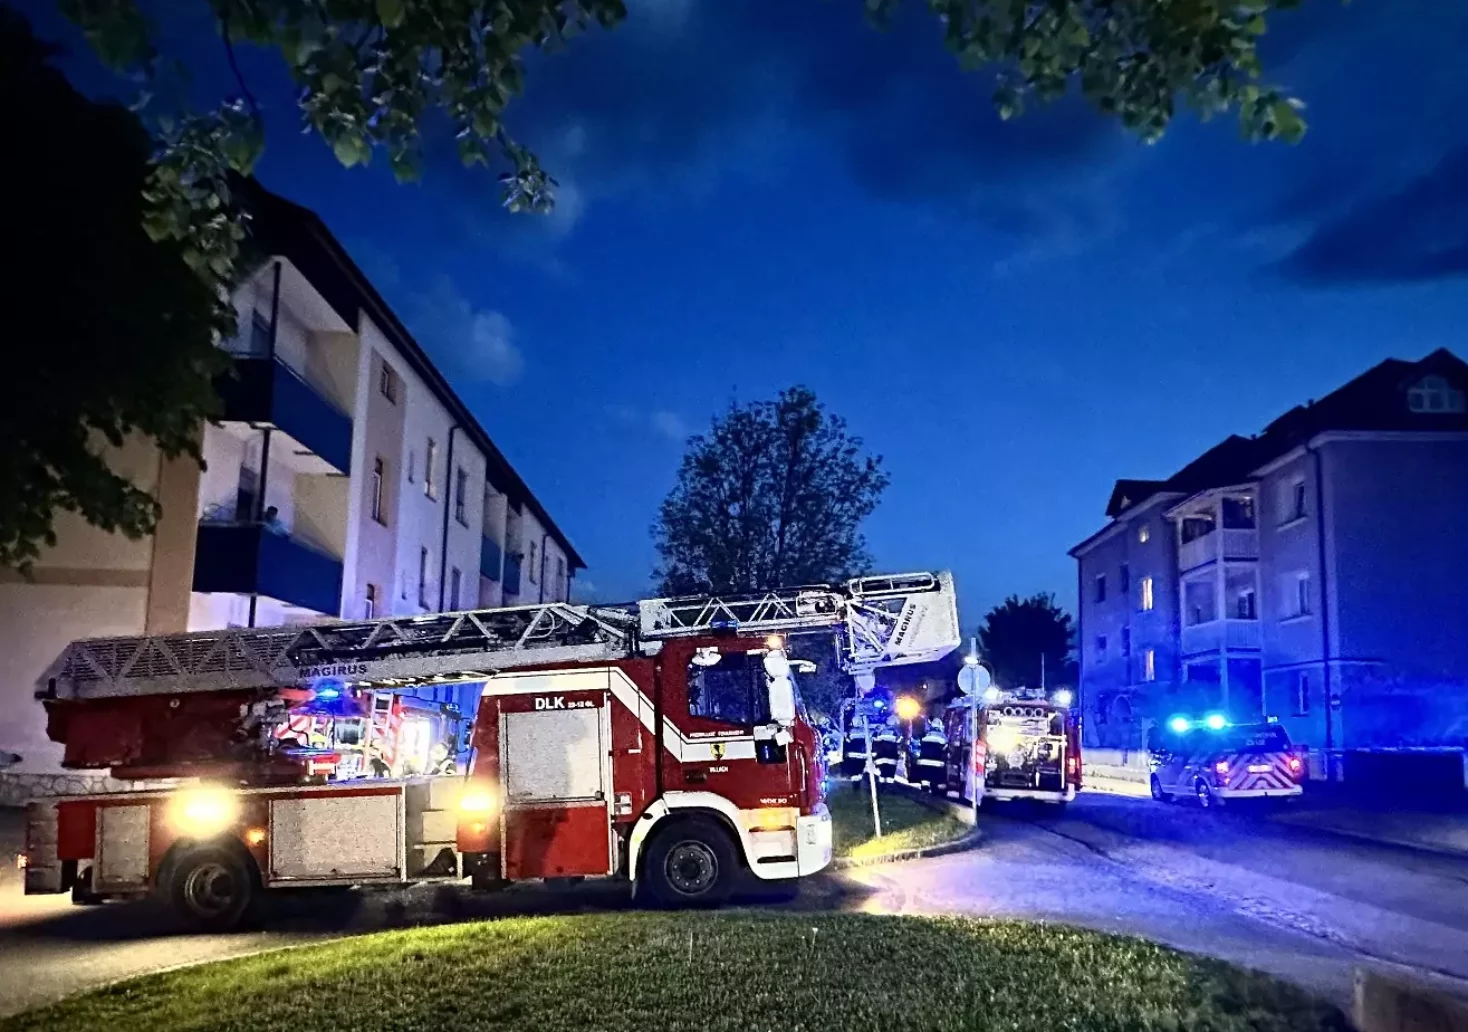 Bild auf 5min.at zeigt ein Feuerwehrauto bei einem nächtlichen Einsatz in Villach.